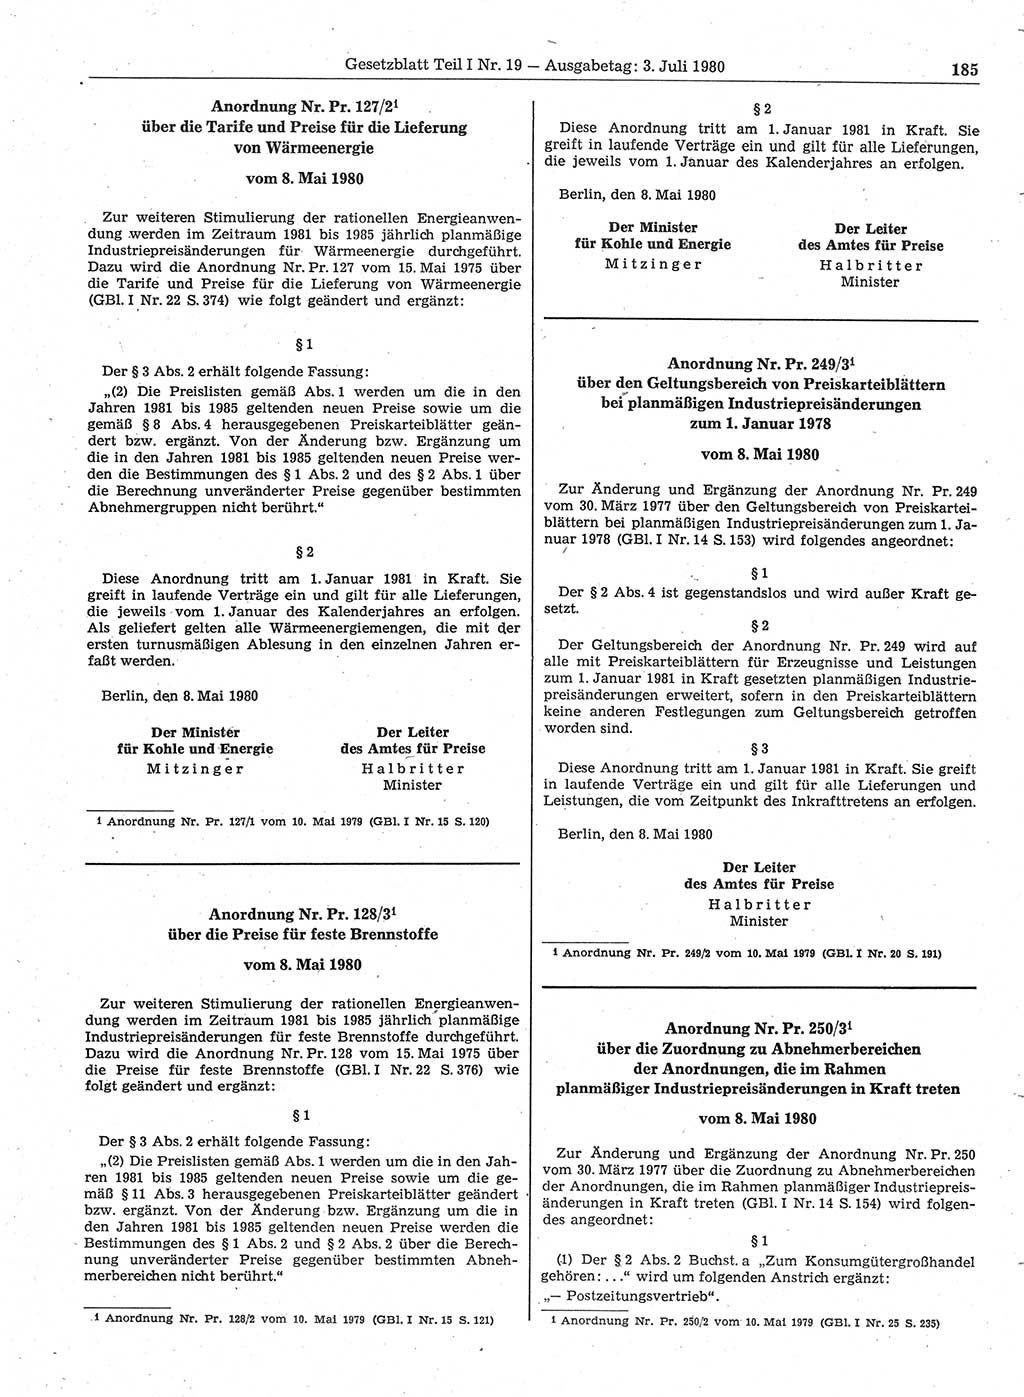 Gesetzblatt (GBl.) der Deutschen Demokratischen Republik (DDR) Teil Ⅰ 1980, Seite 185 (GBl. DDR Ⅰ 1980, S. 185)